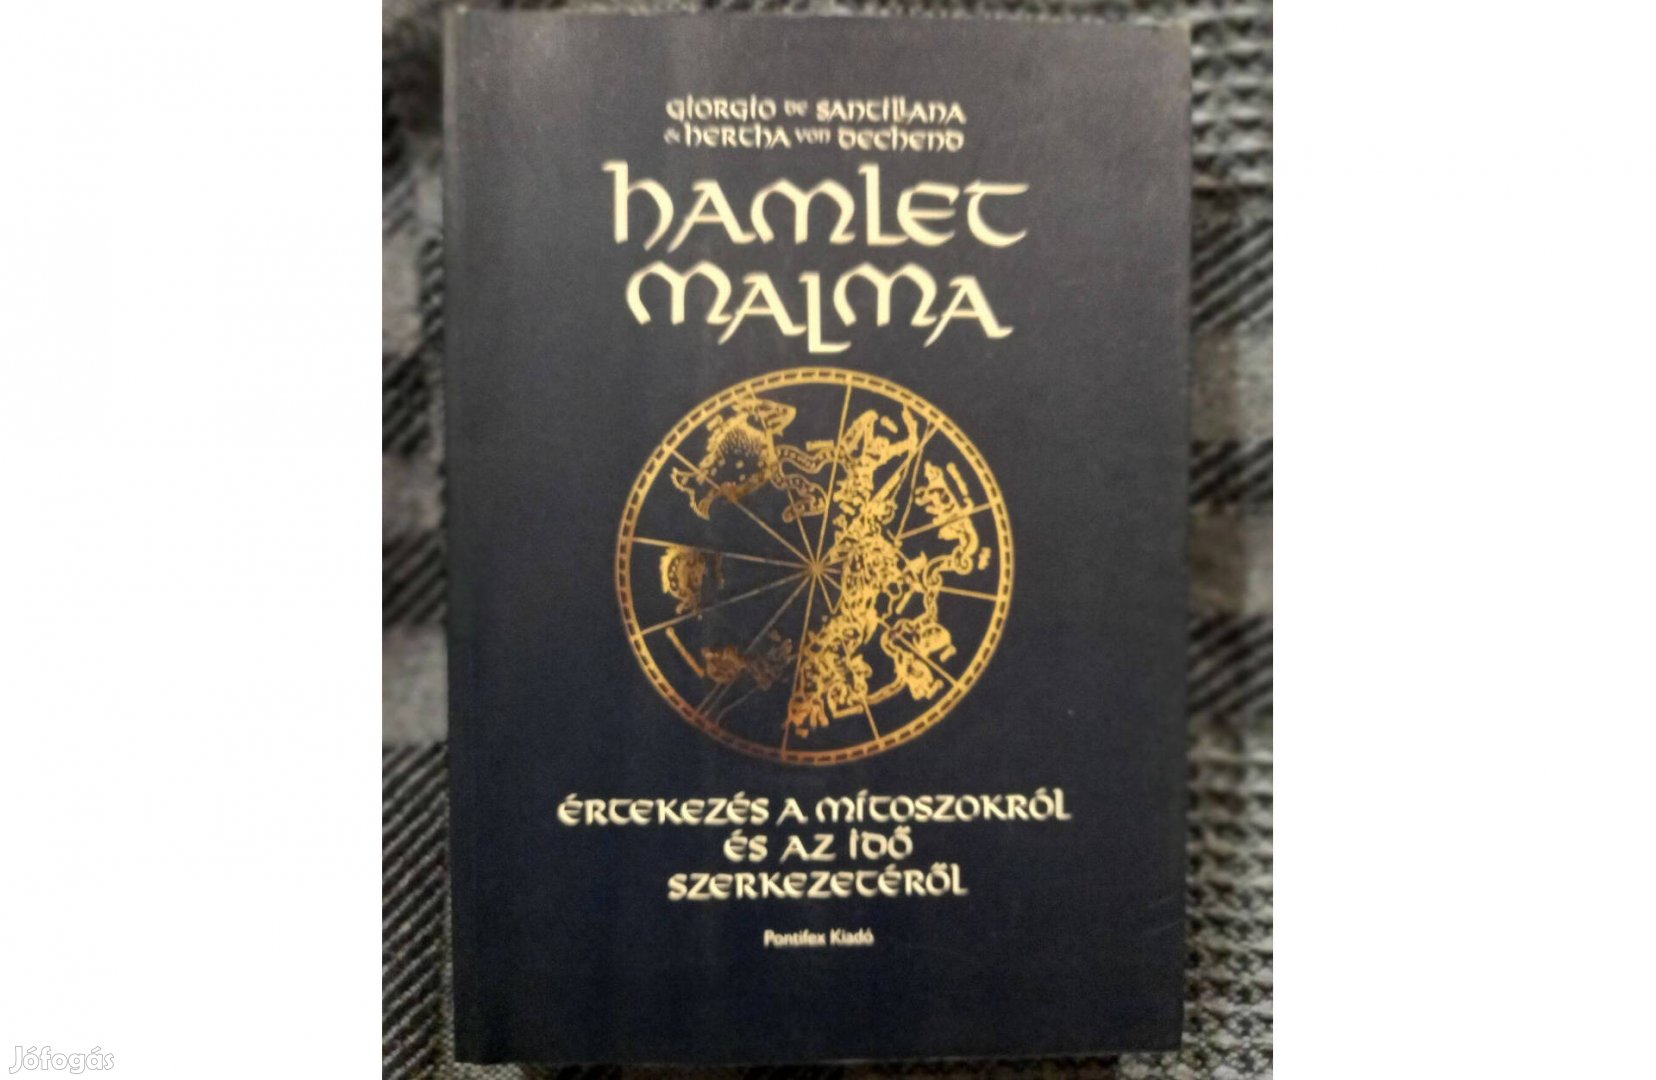 G.Santillana H.Dechend: Hamlet malma című könyv jó állapotban eladó